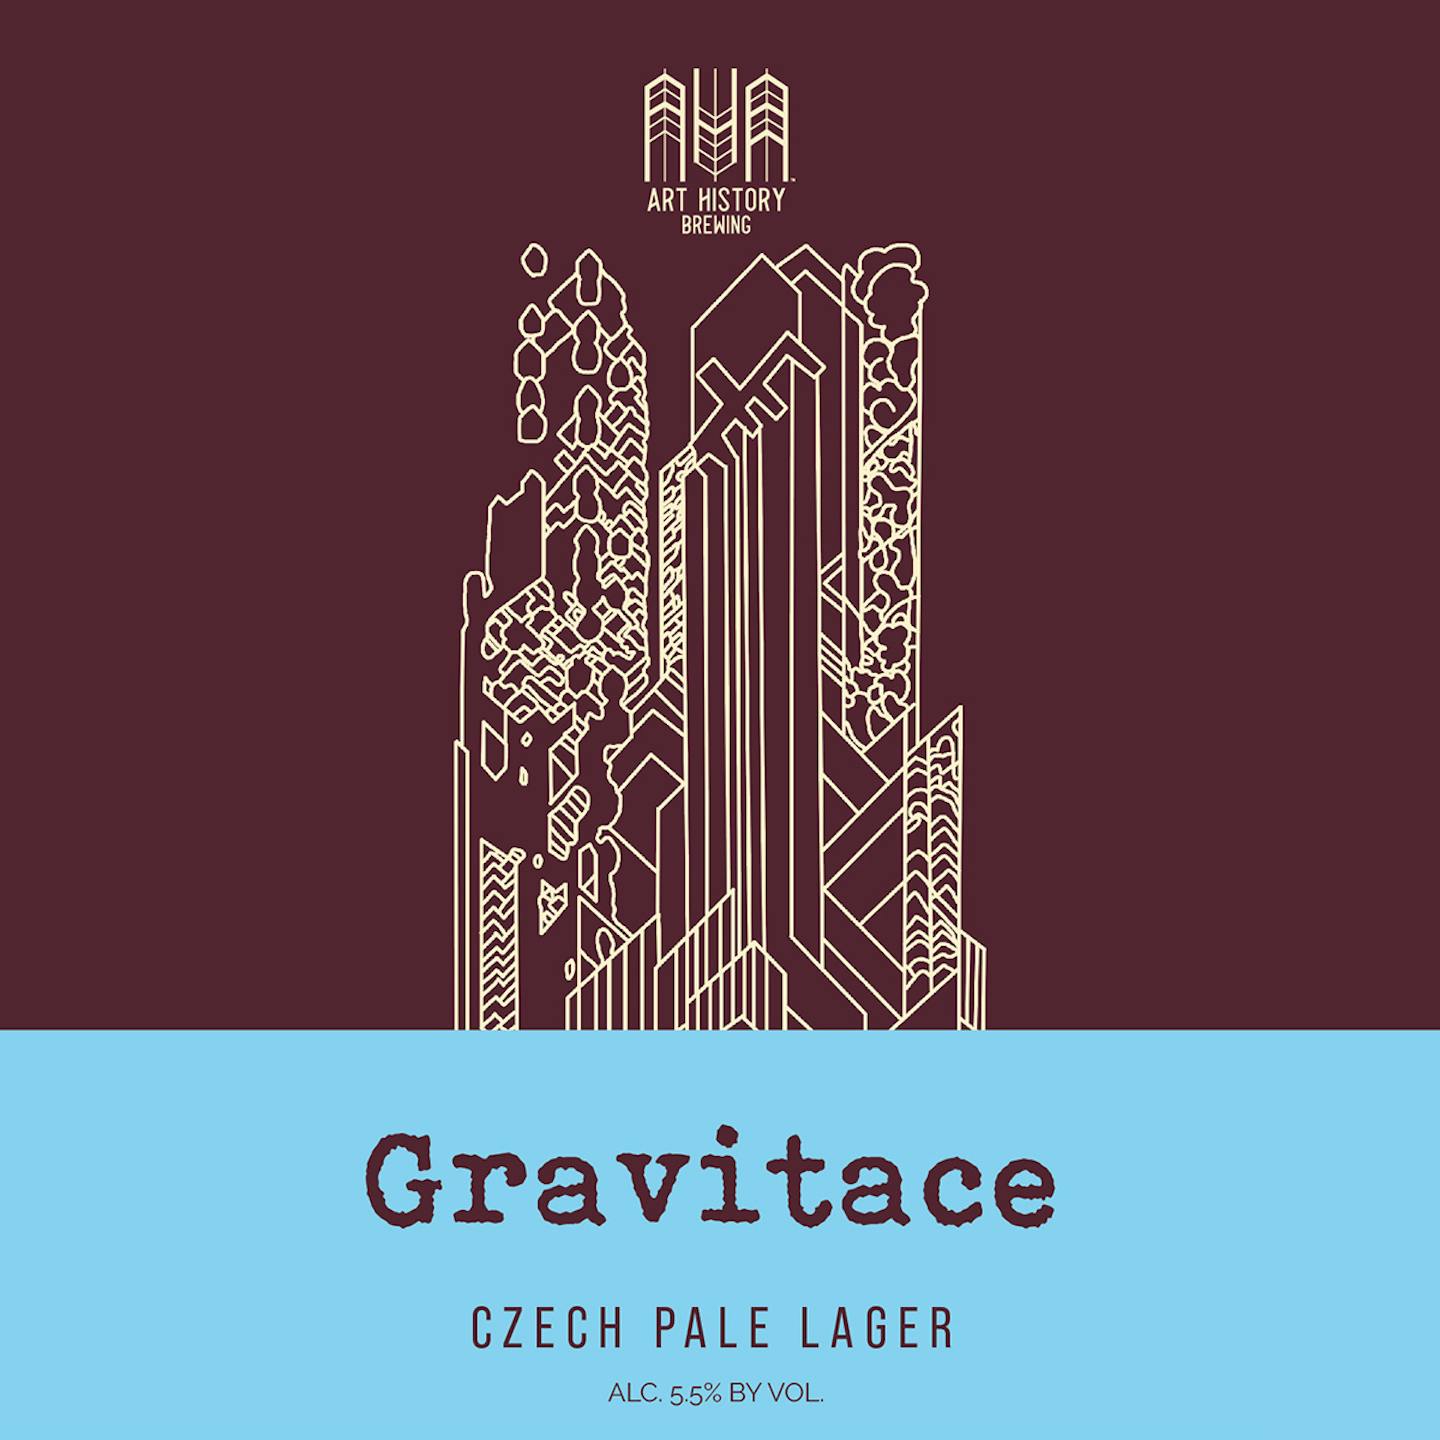 Gravitace Beer Label